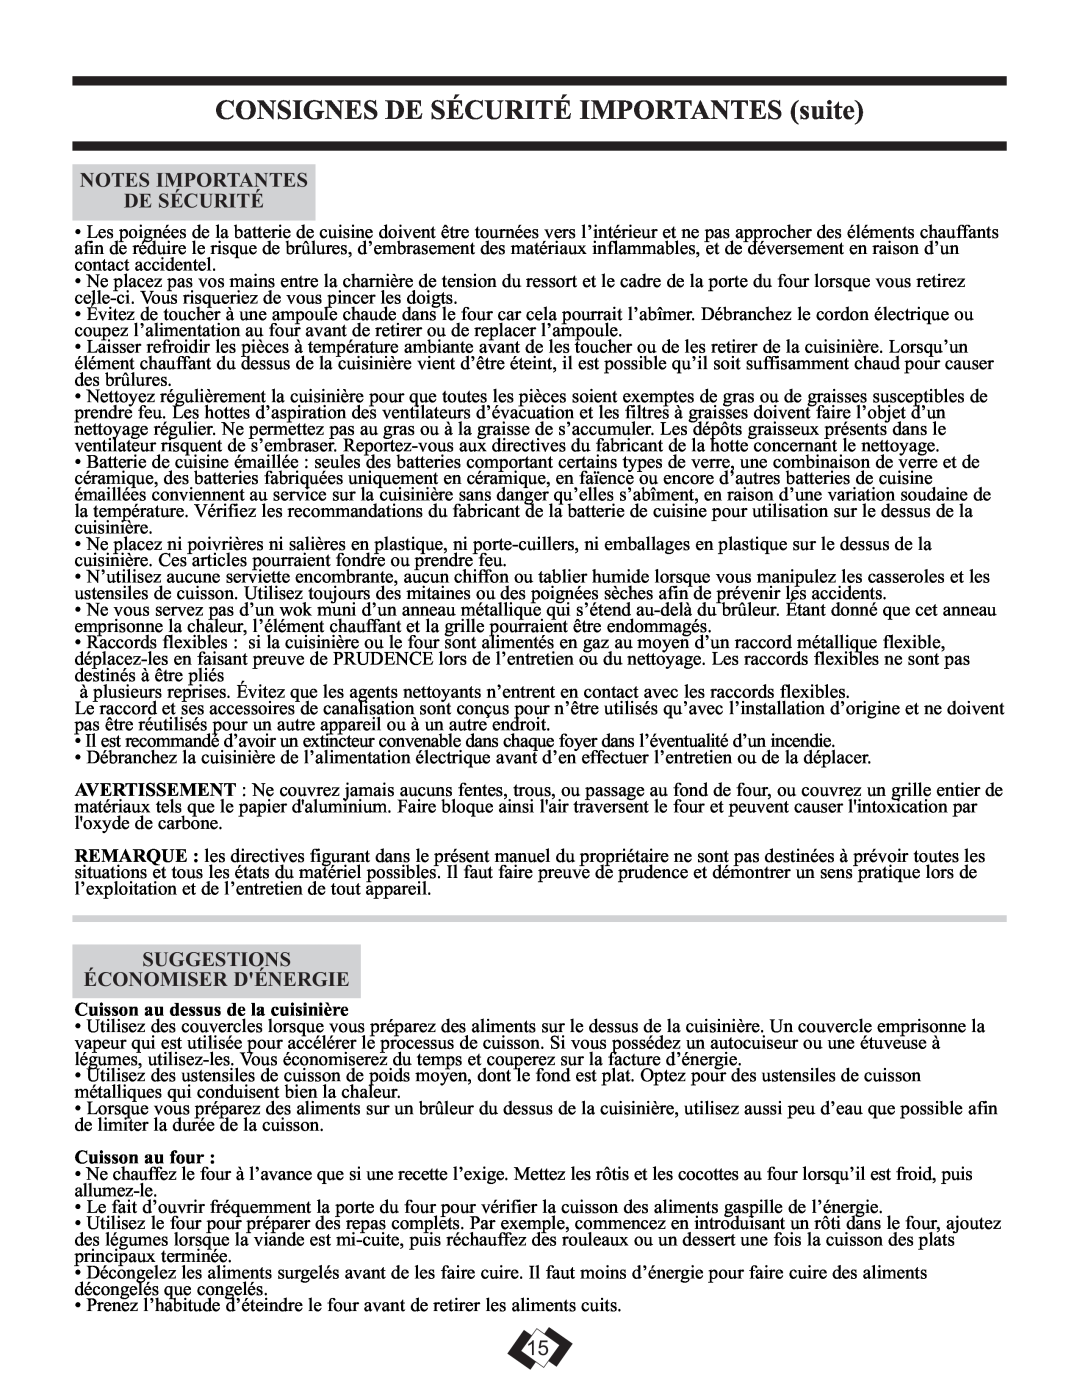 Danby DR299BLSGLP CONSIGNES DE SÉCURITÉ IMPORTANTES suite, Notes Importantes De Sécurité, Suggestions Économiser Dénergie 